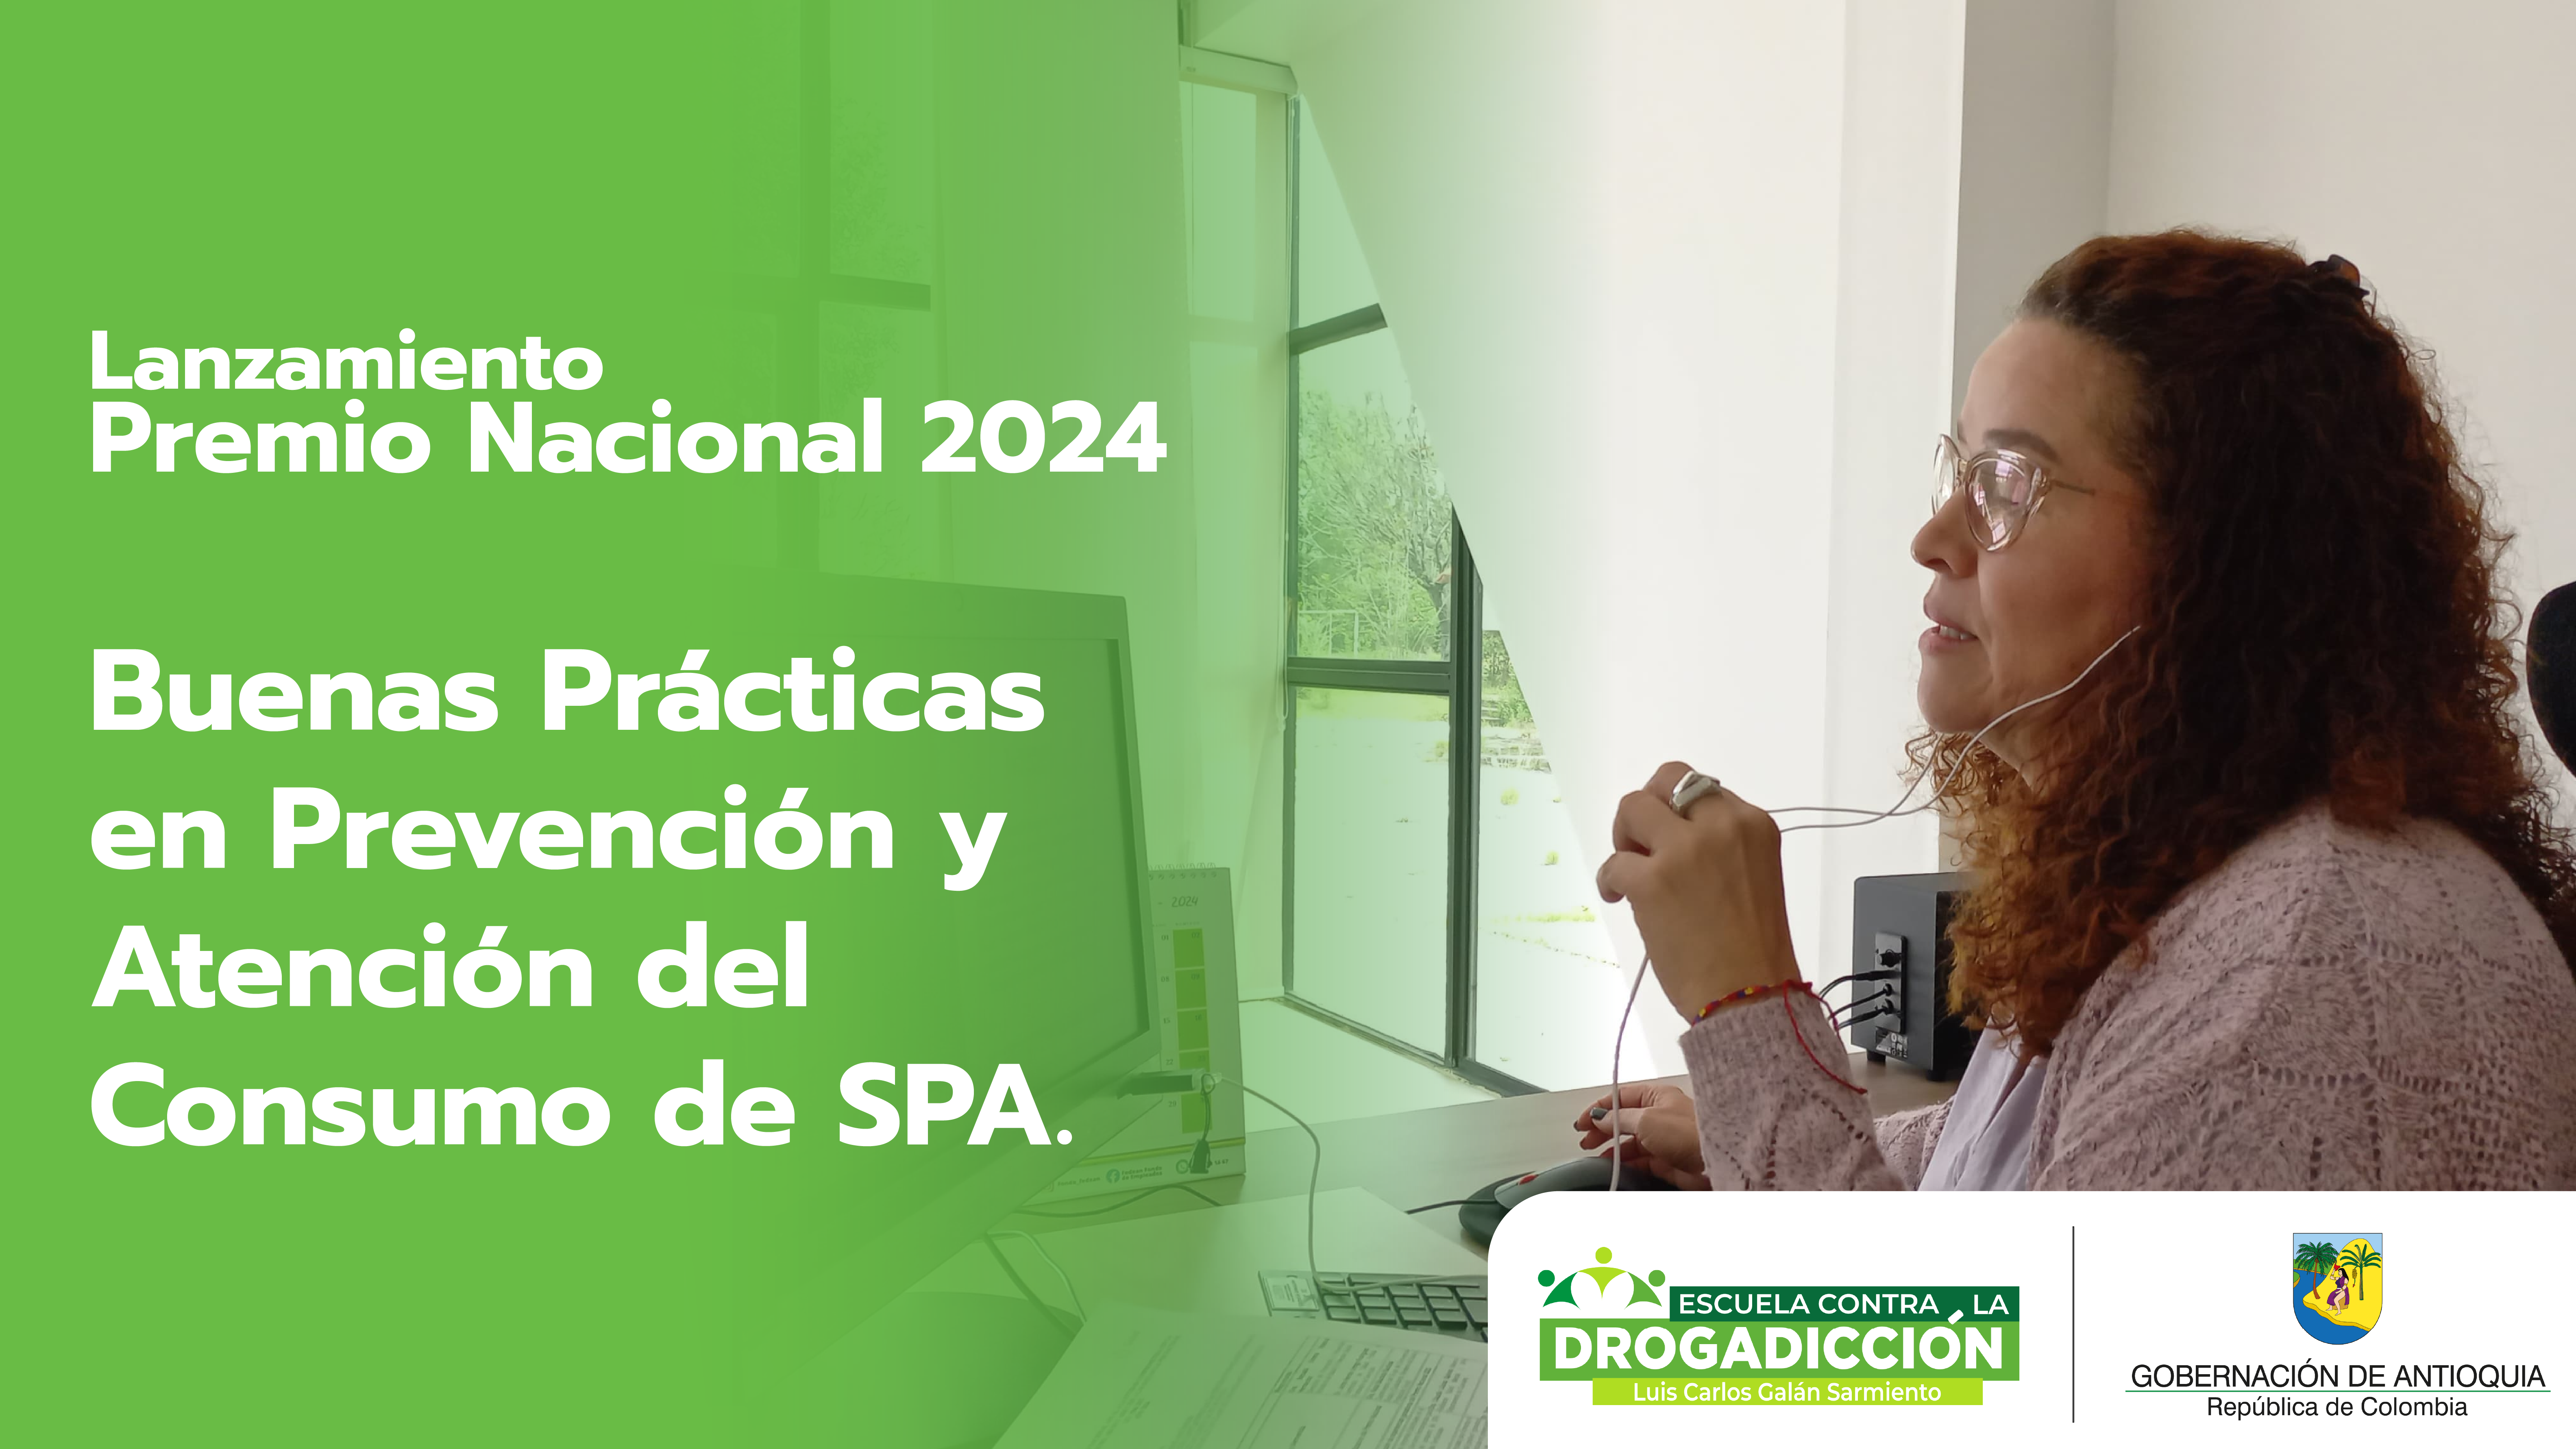 Escuela Contra la Drogadicción comparte sus experiencias exitosas en el lanzamiento del Premio Nacional 2024 de Buenas Prácticas en Prevención y Atención del Consumo de SPA.